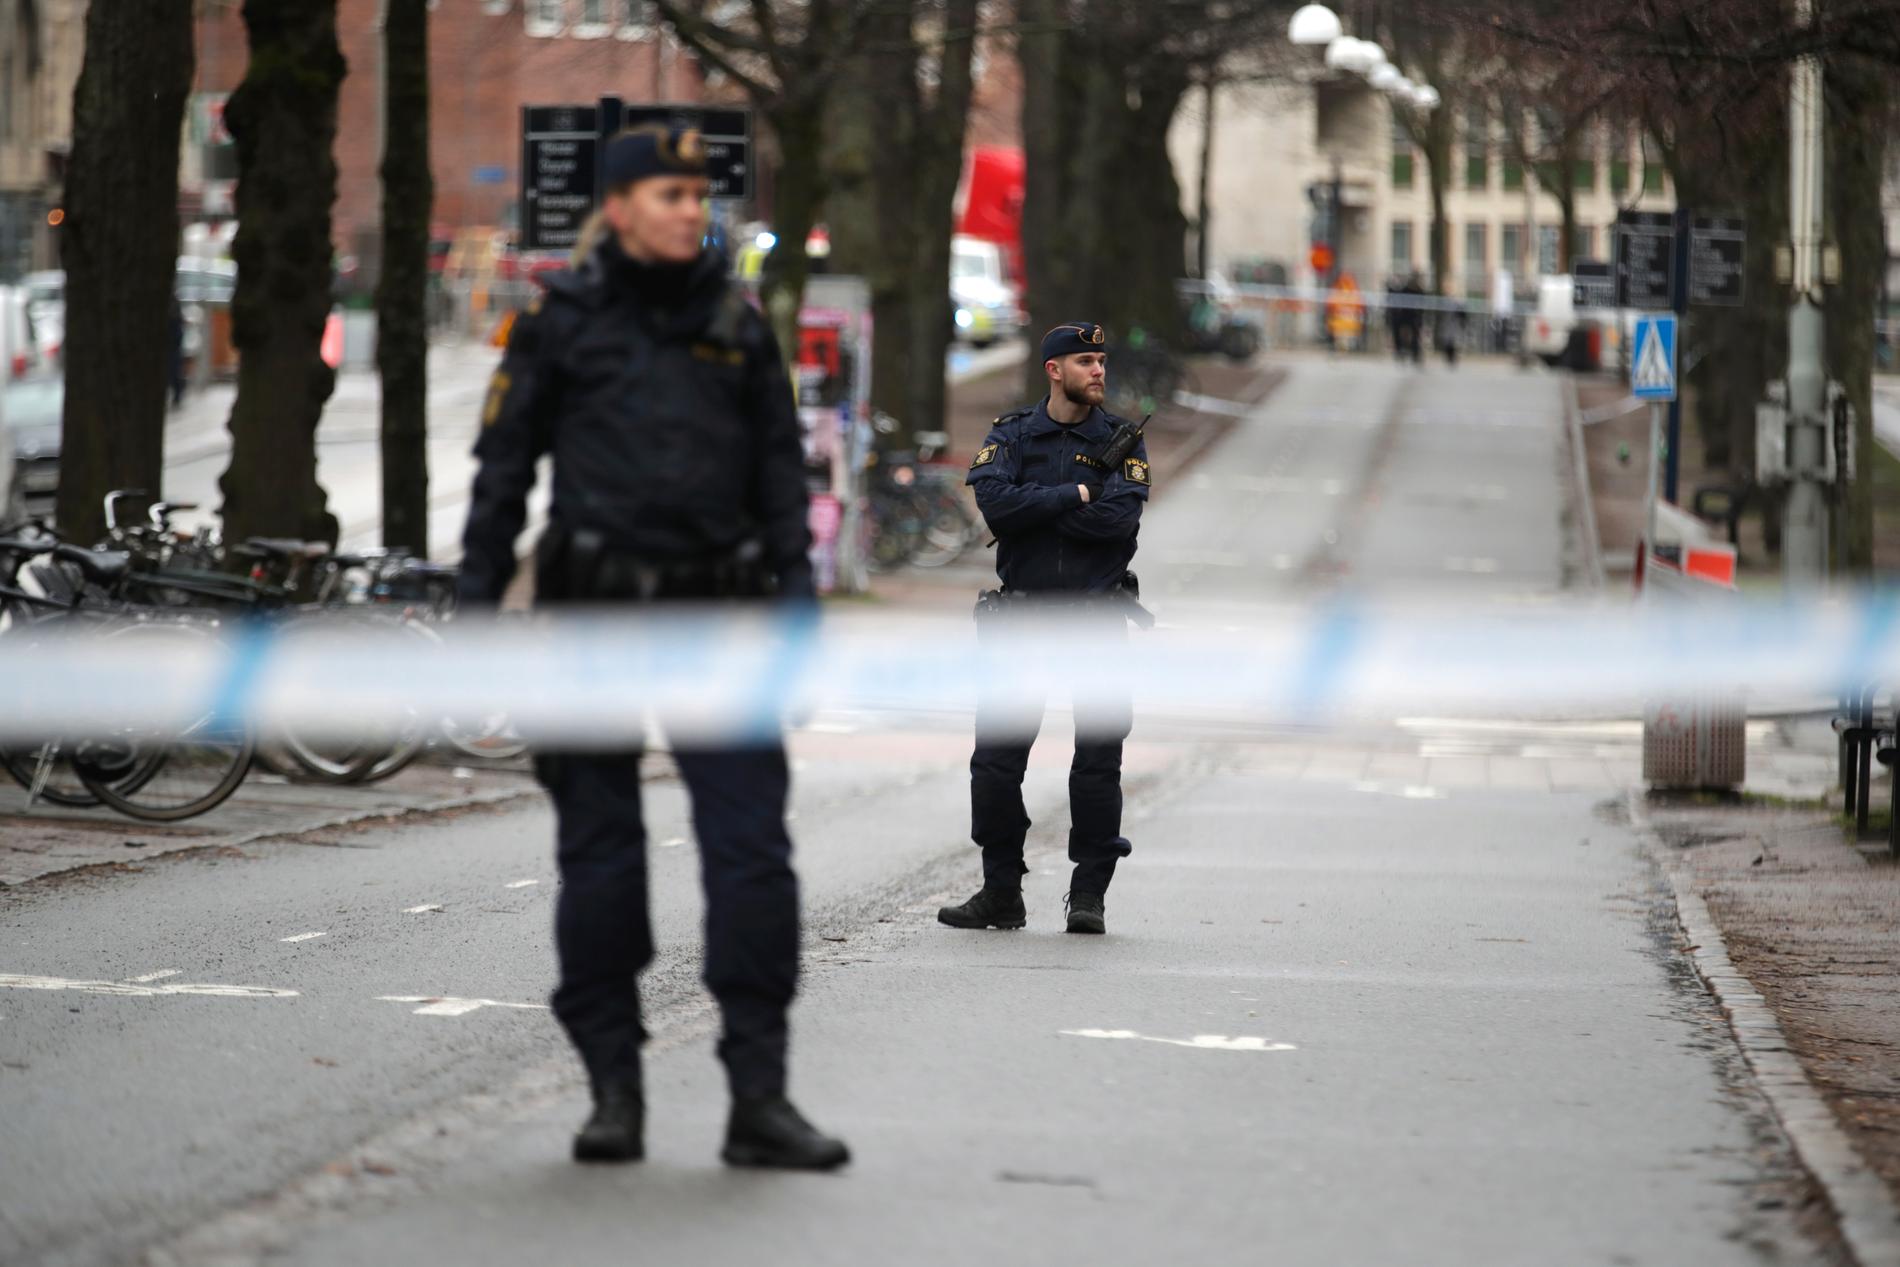 Polis på plats vid avspärrningarna, som nu hävts, i centrala Göteborg.